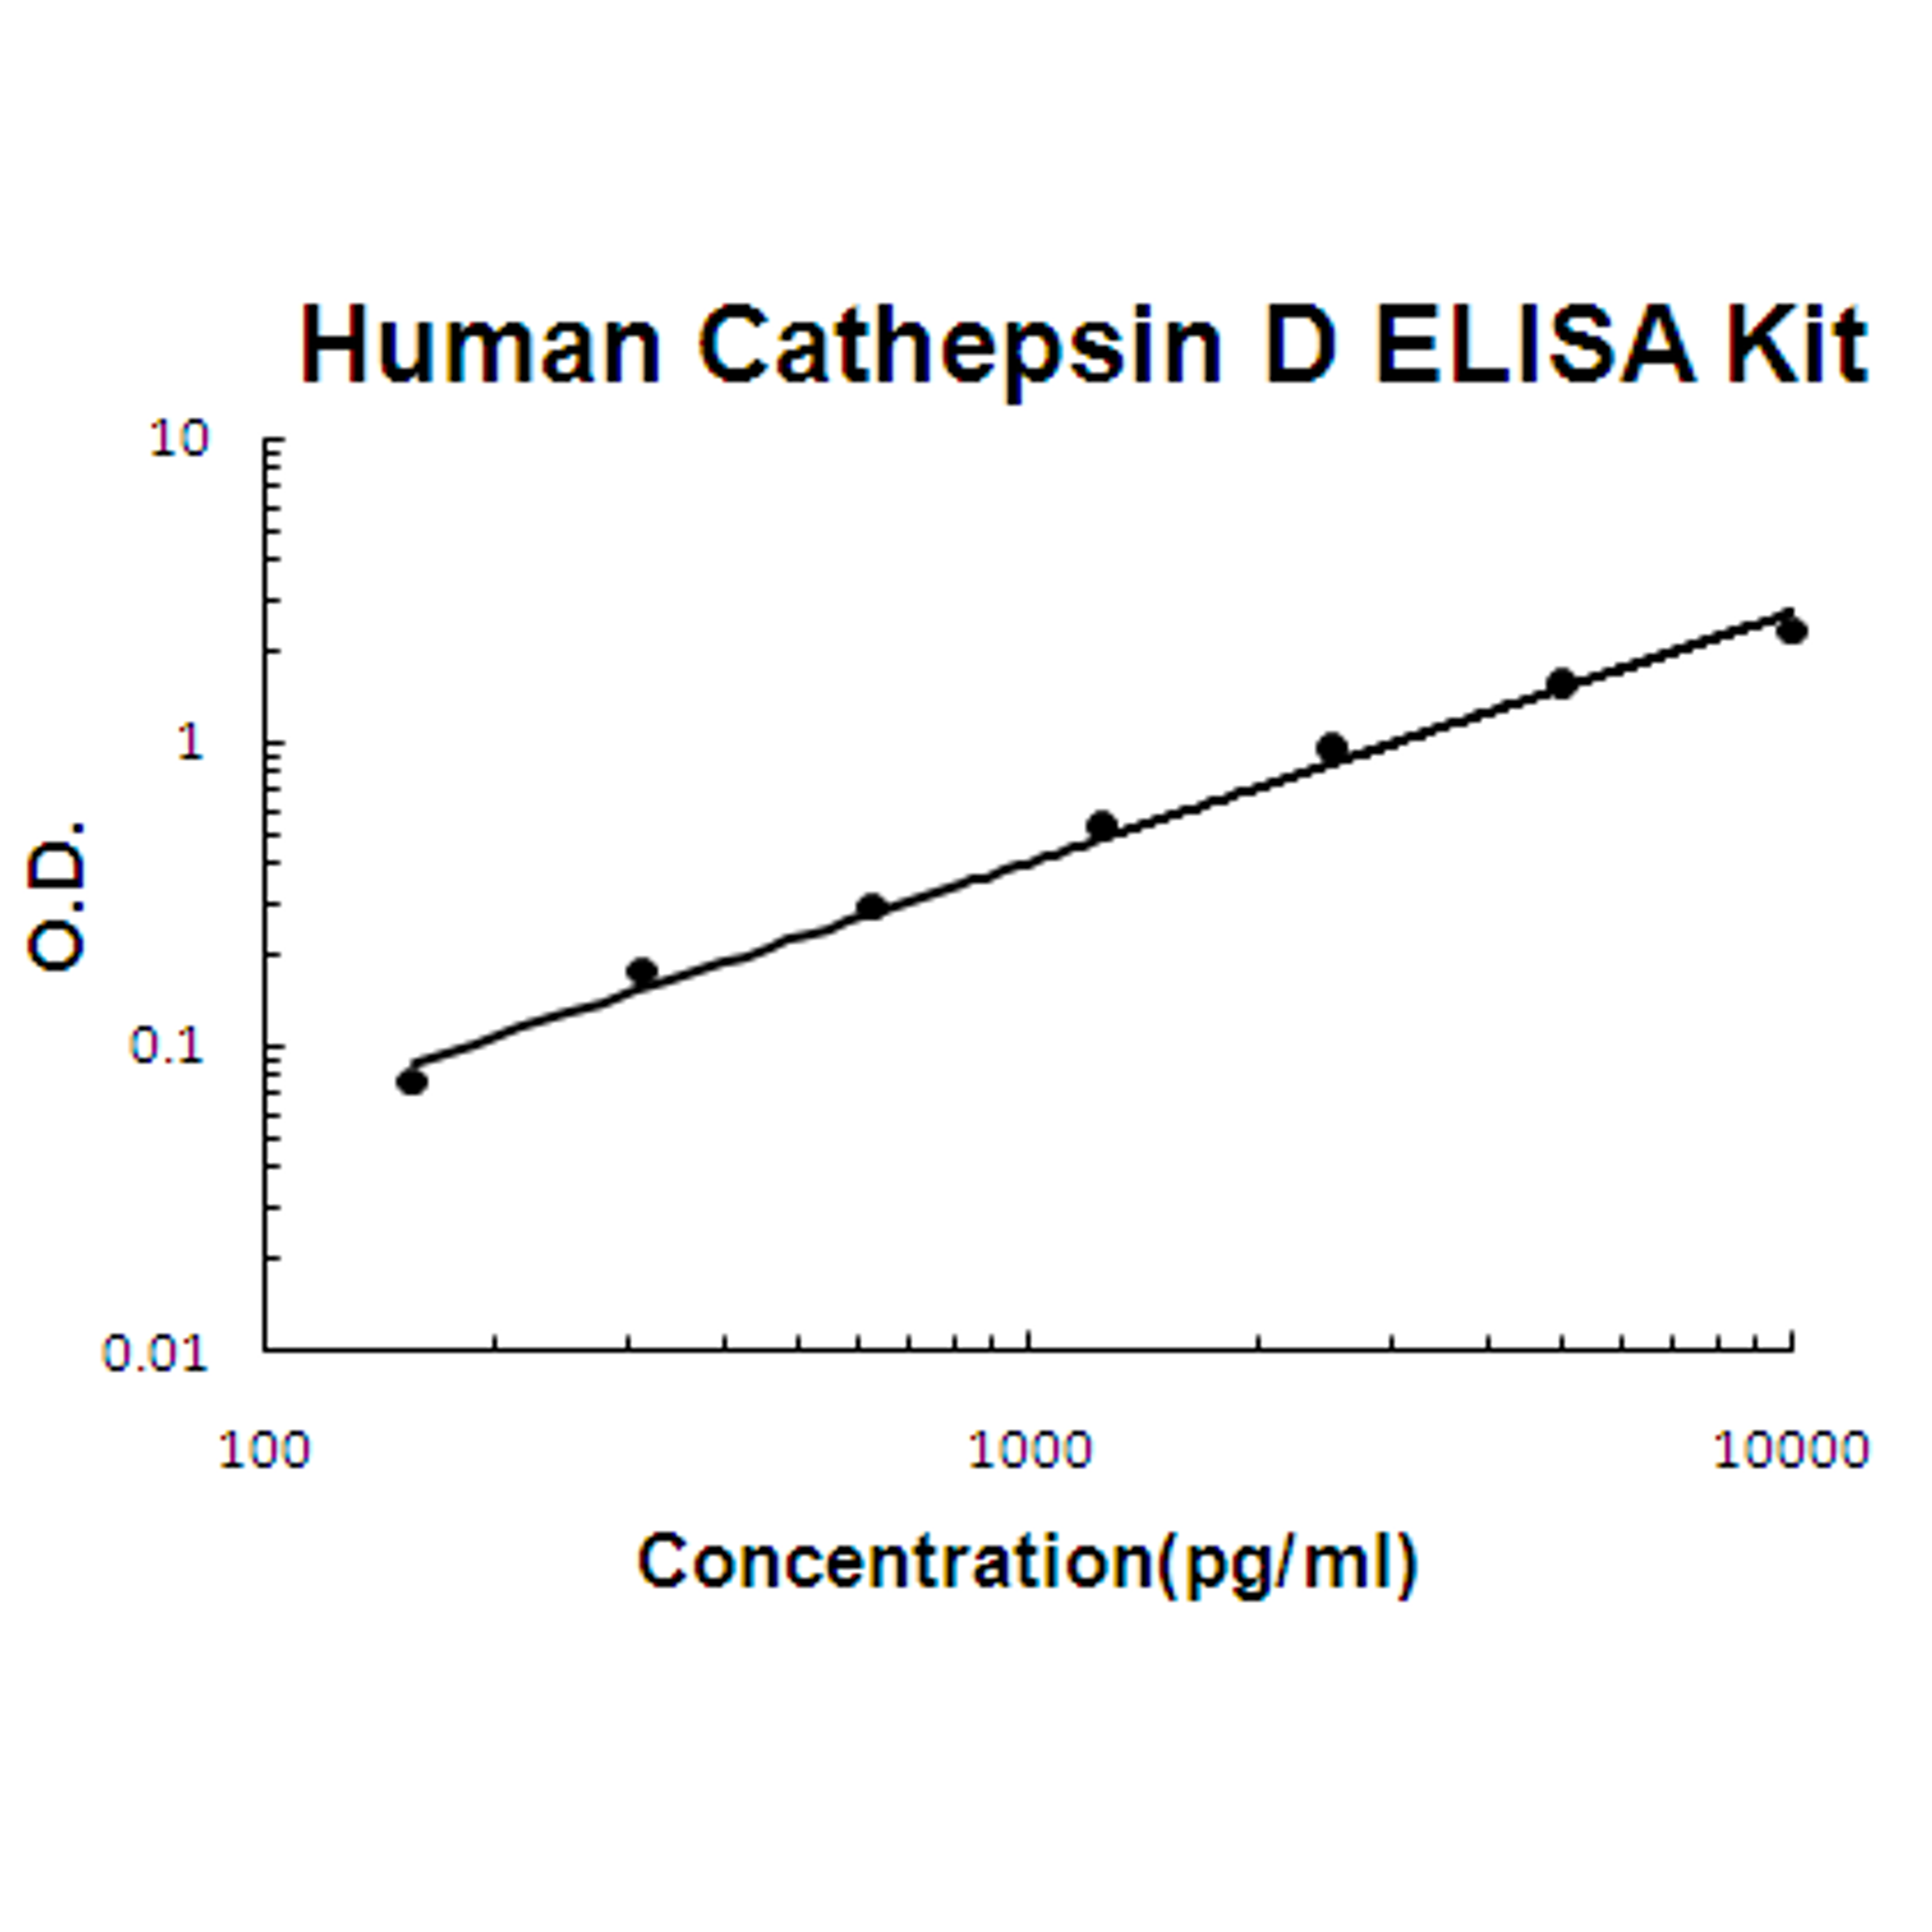 Human Cathepsin D PicoKine ELISA Kit standard curve